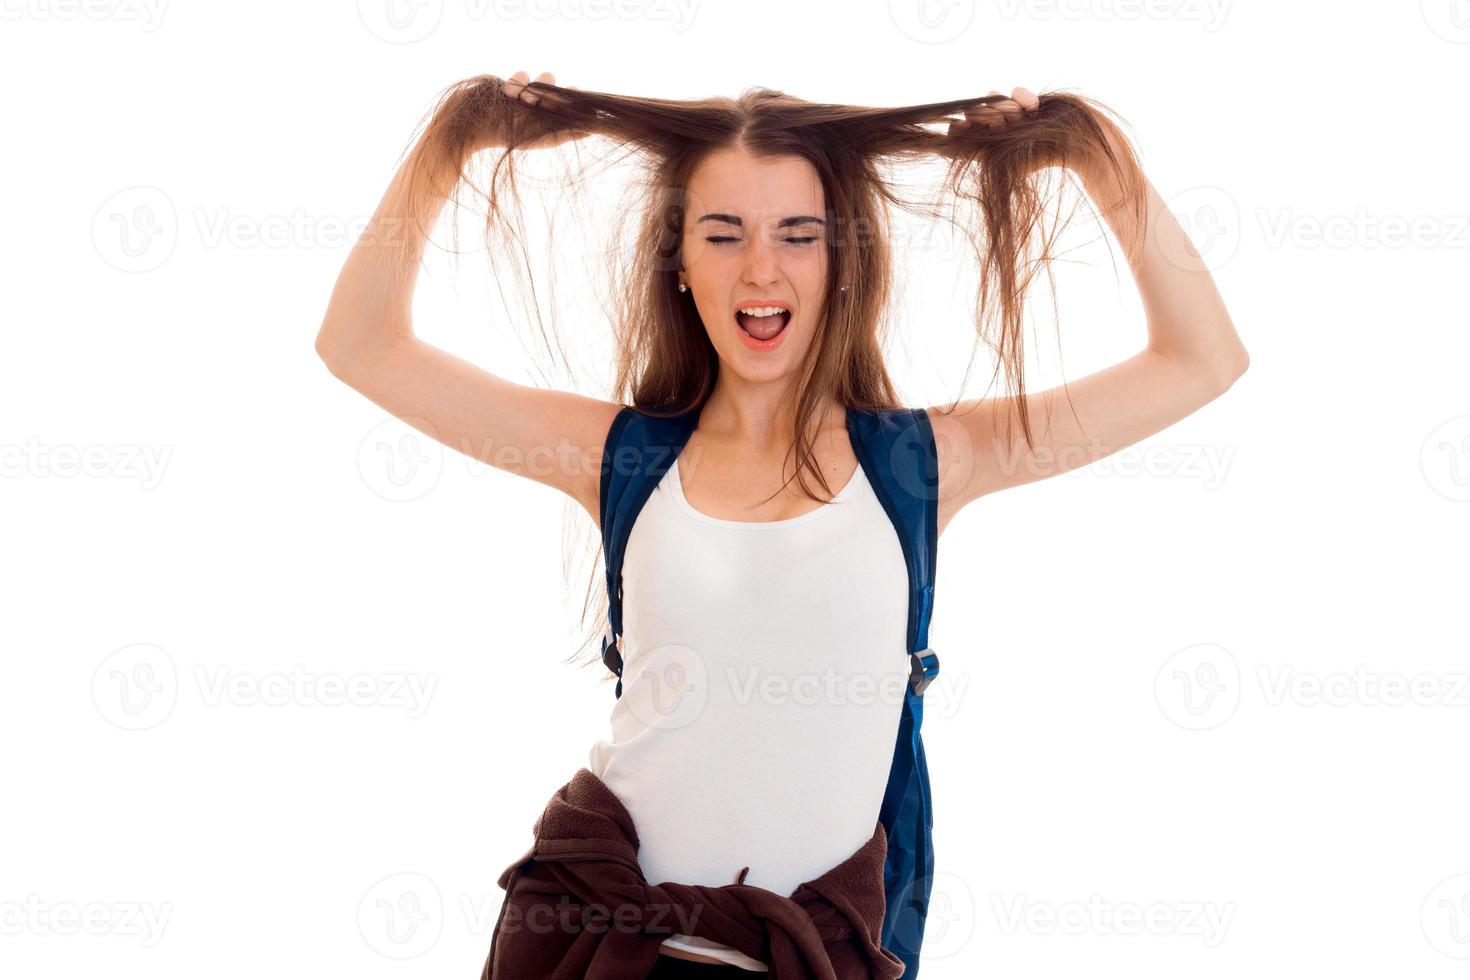 engraçado jovem estudante morena com mochila azul nos ombros dela posando isolado no fundo branco foto